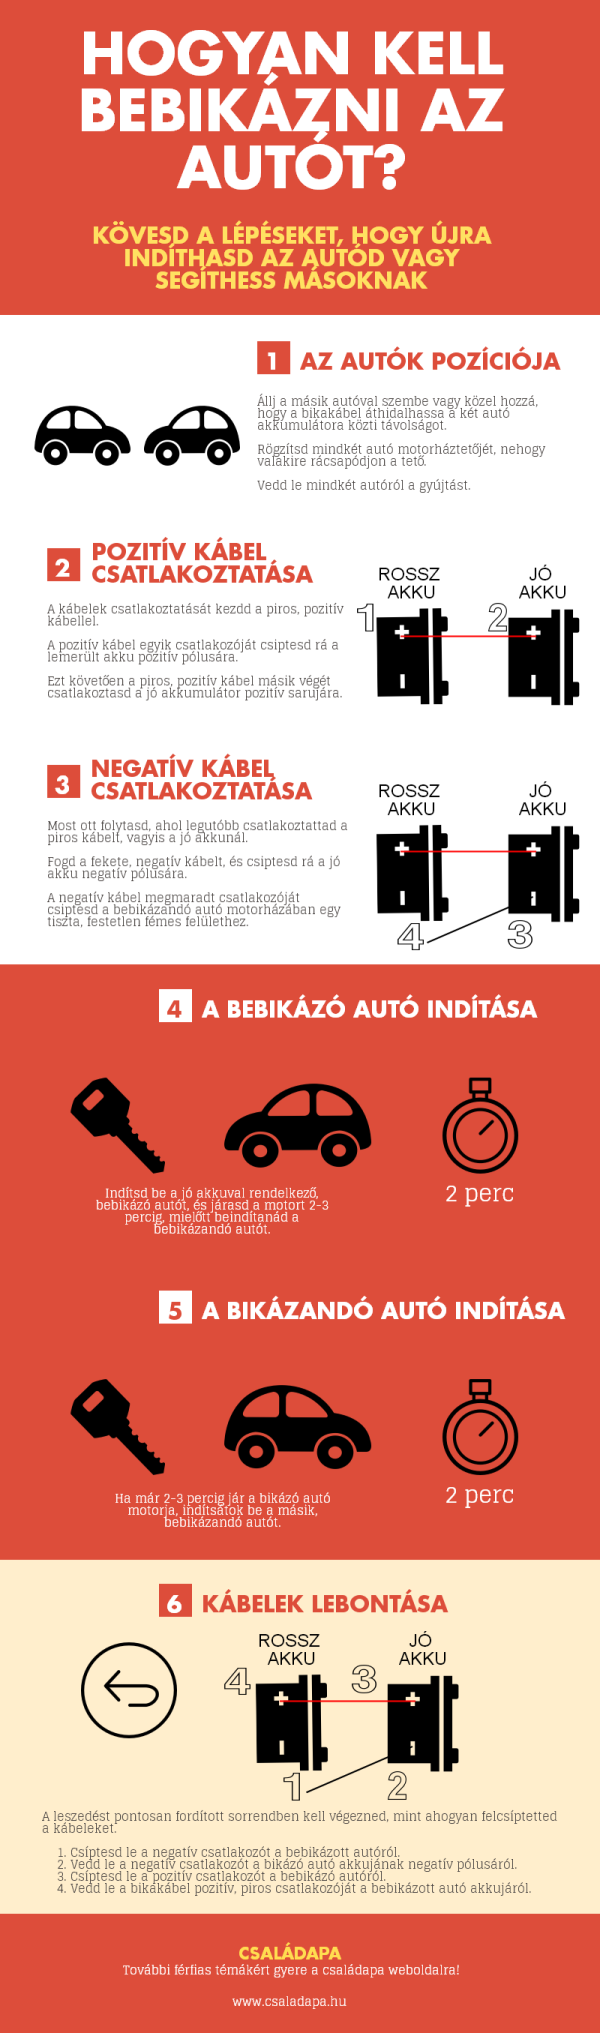 Infografika - Hogyan kell bebikázni az autót?